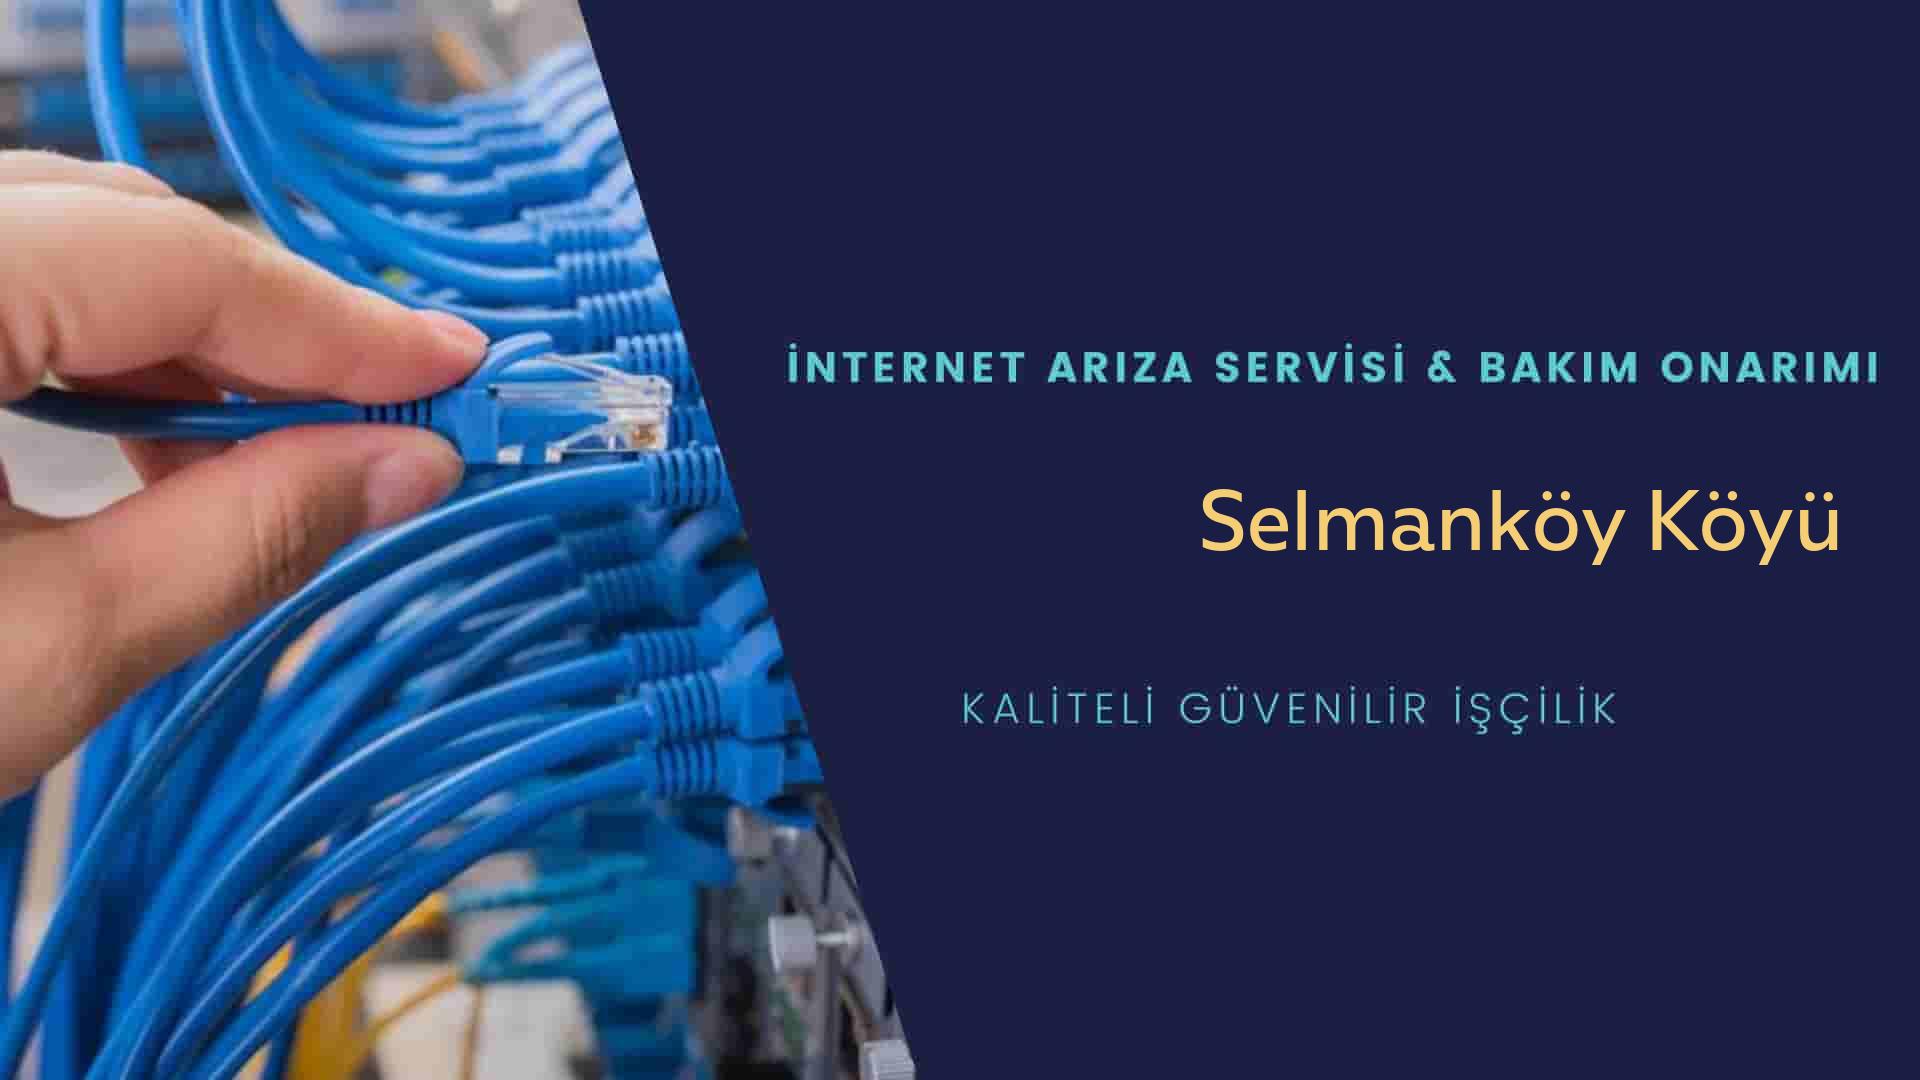 Selmanköy Köyü internet kablosu çekimi yapan yerler veya elektrikçiler mi? arıyorsunuz doğru yerdesiniz o zaman sizlere 7/24 yardımcı olacak profesyonel ustalarımız bir telefon kadar yakındır size.